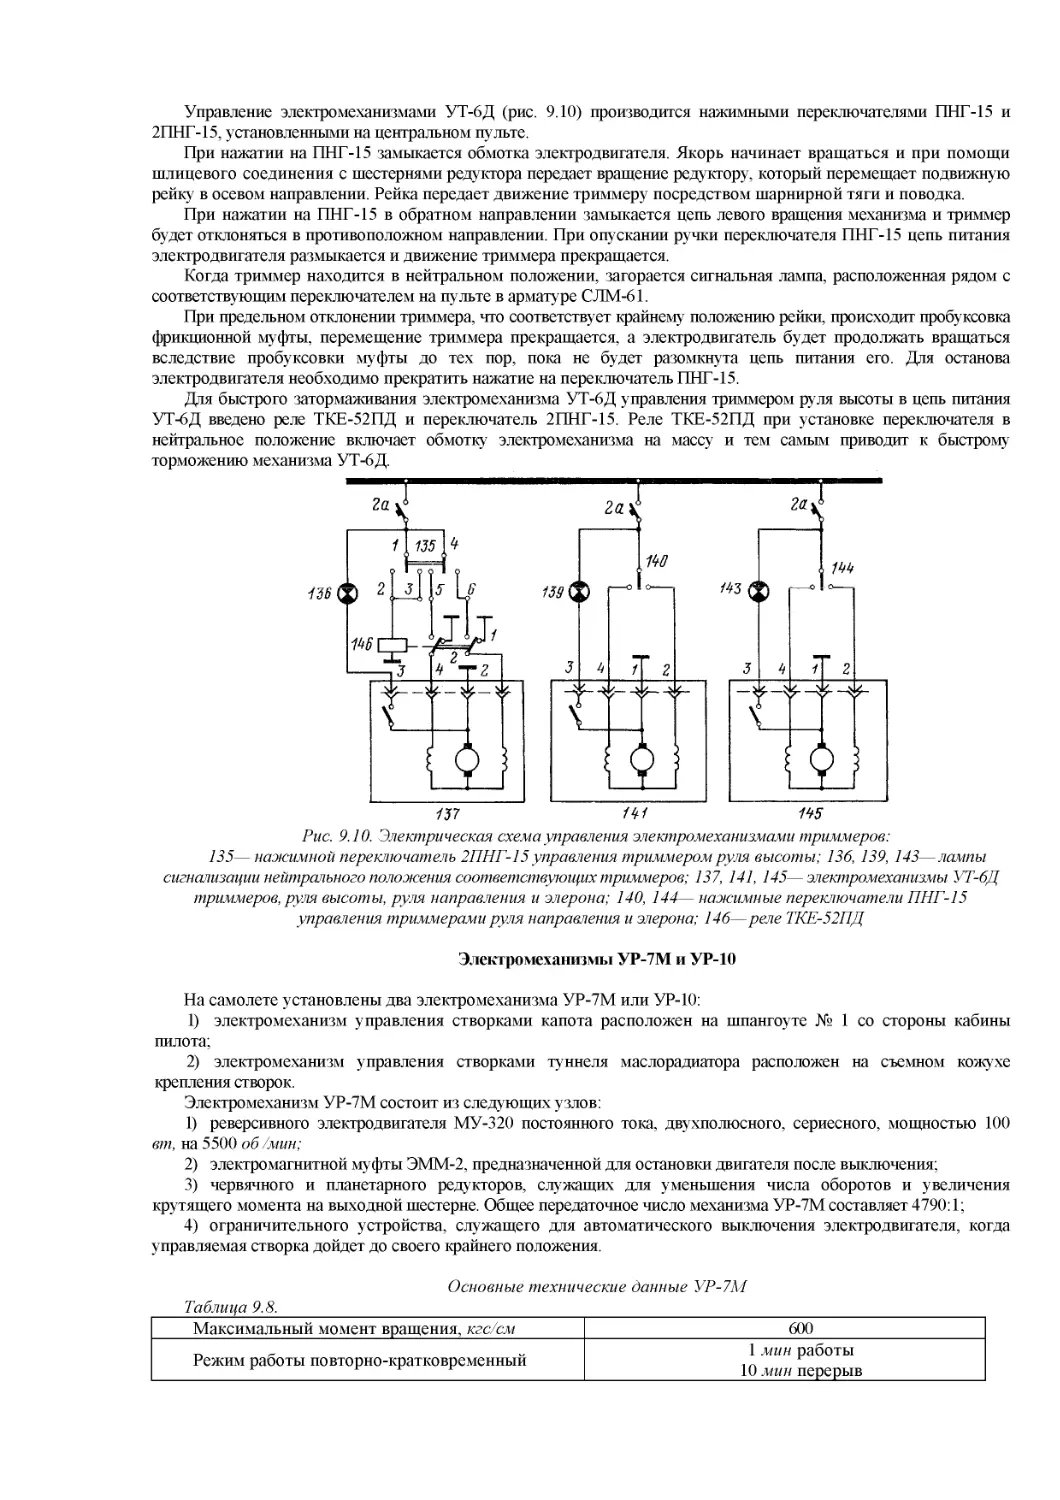 Электромеханизмы УР-7М и УР-10